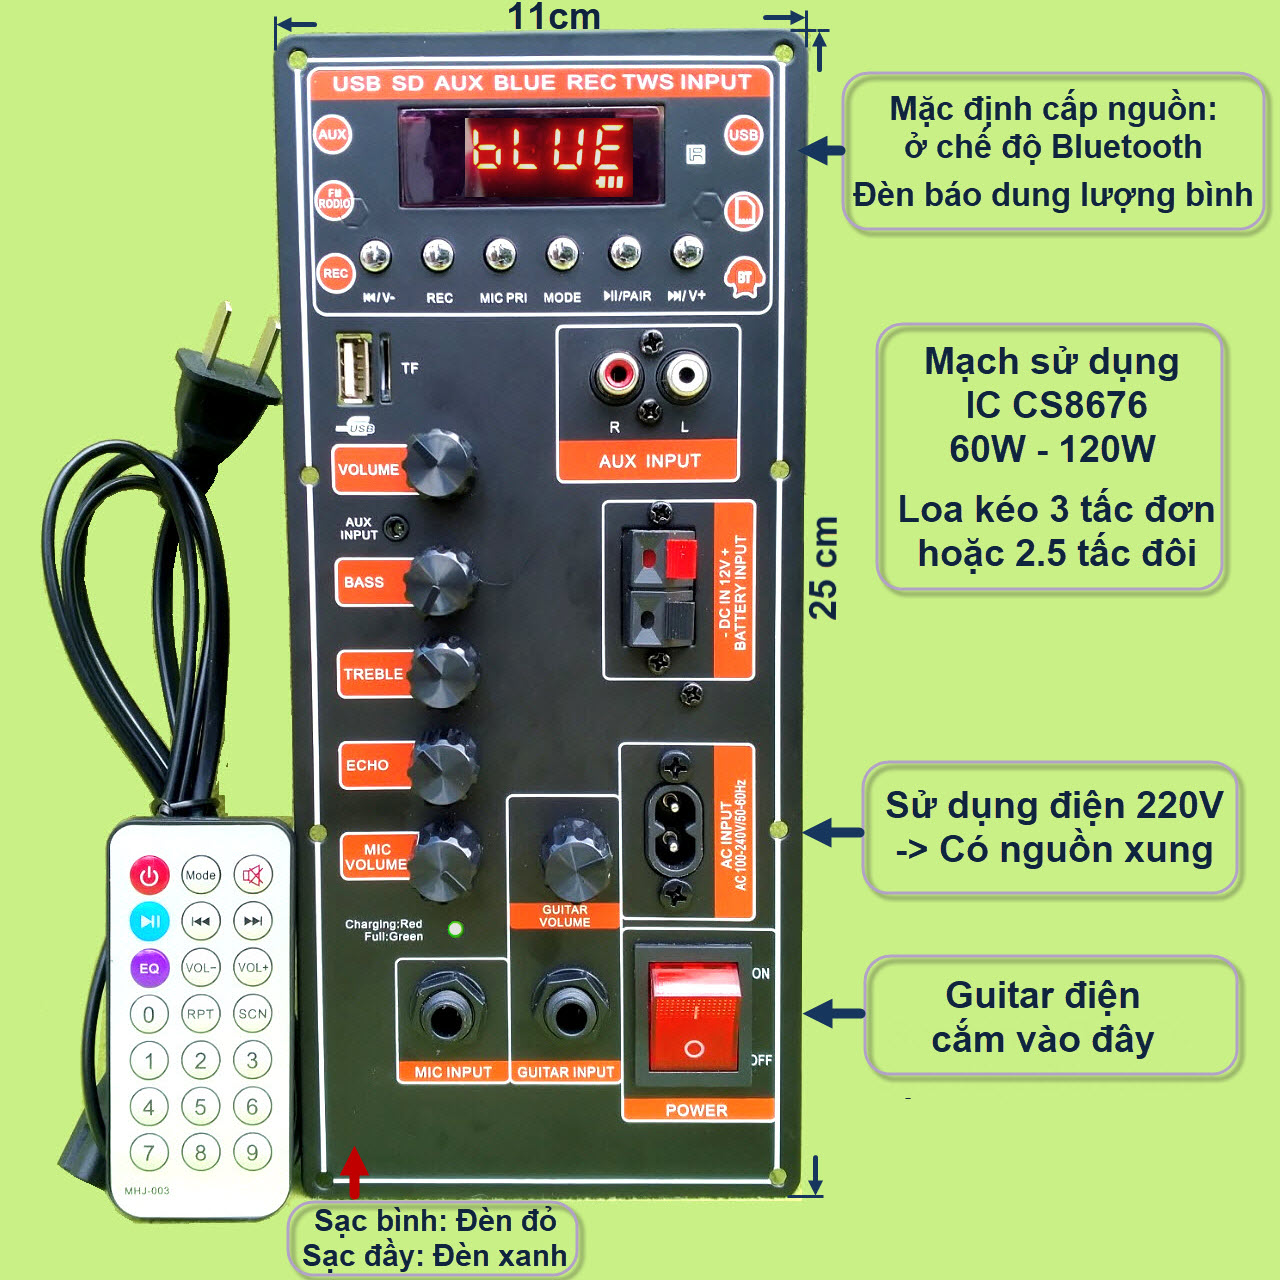 Mạch loa kéo CS8676 có nguồn xung – Bluetooth Karaoke Guitar điện – cho loa kéo 3 tấc đơn hoặc 2.5 tấc đôi